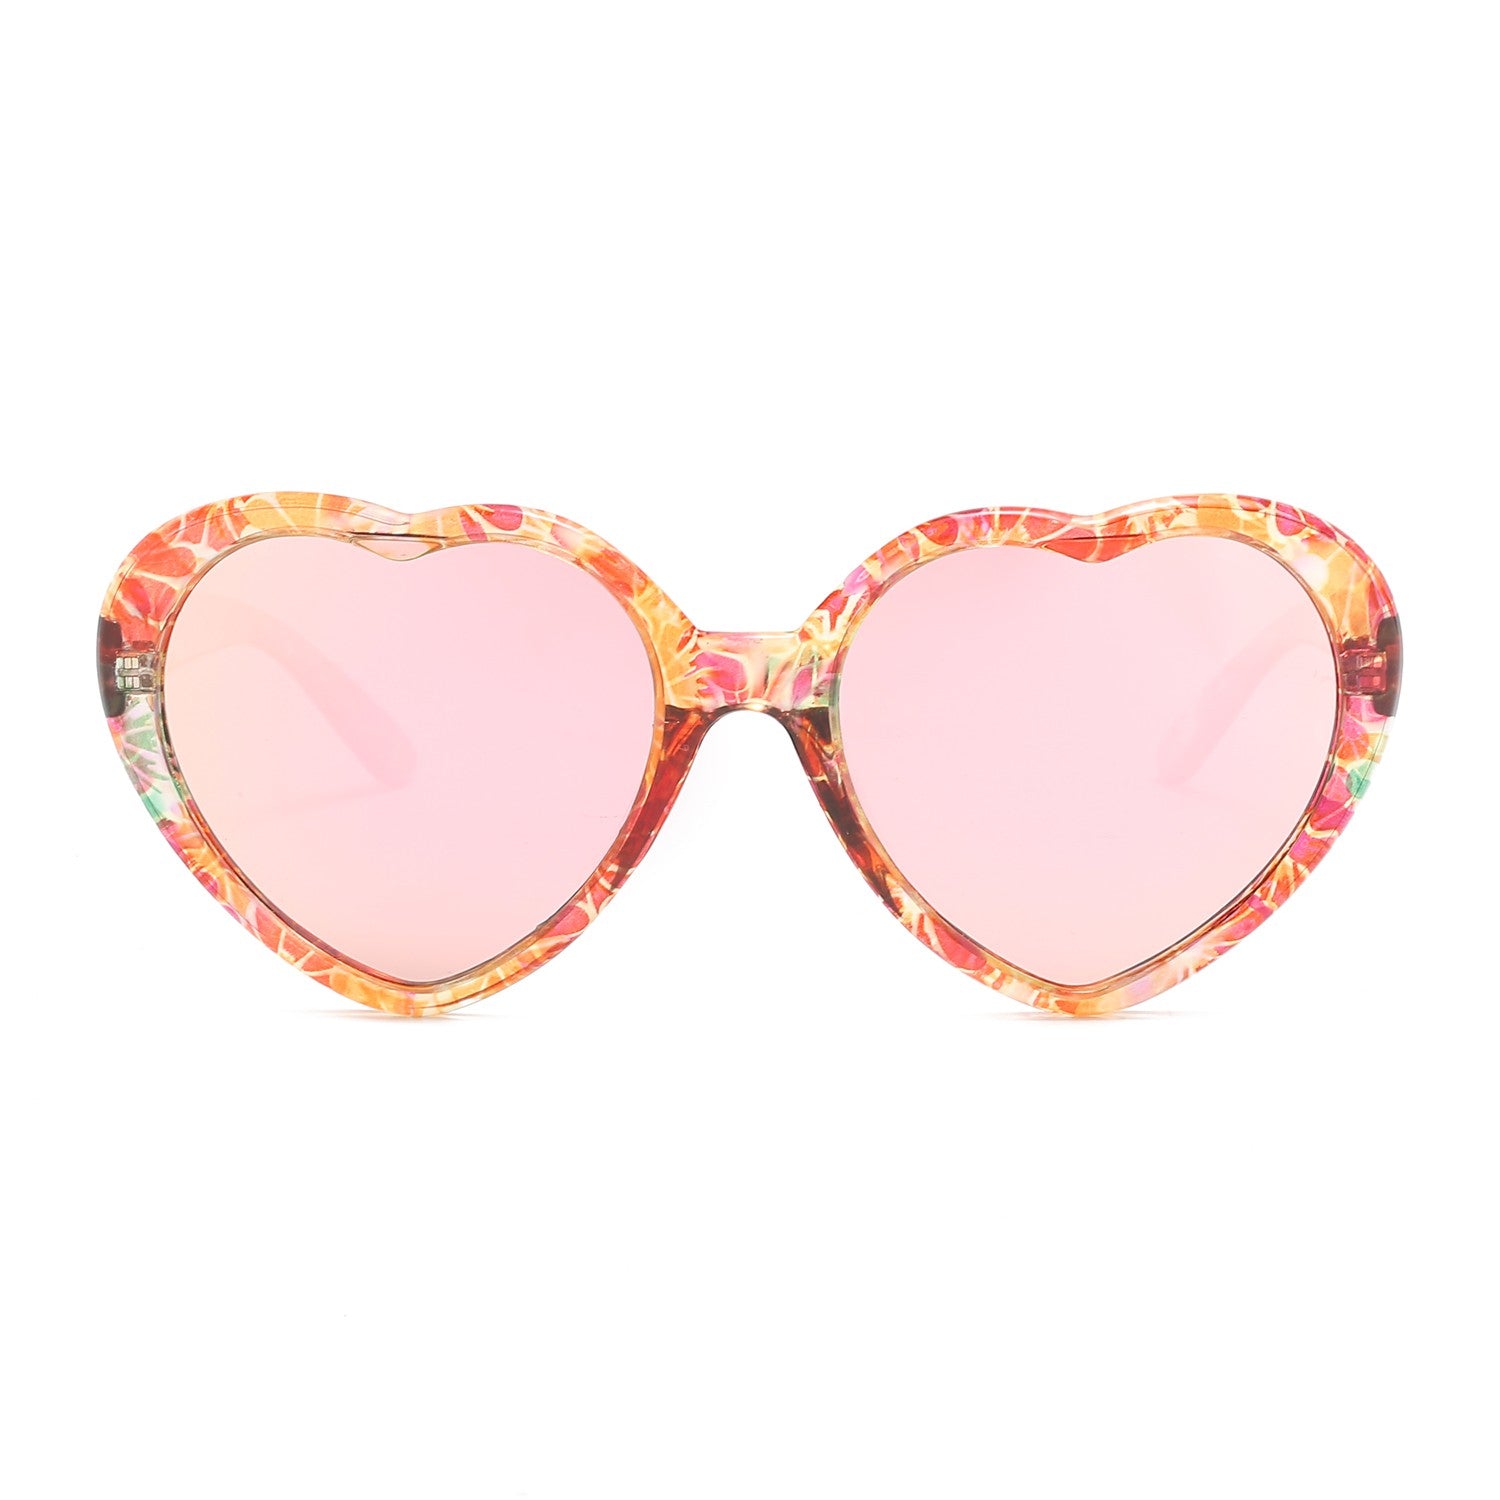  LVIOE Heart Sunglasses for Women, Polarized Heart